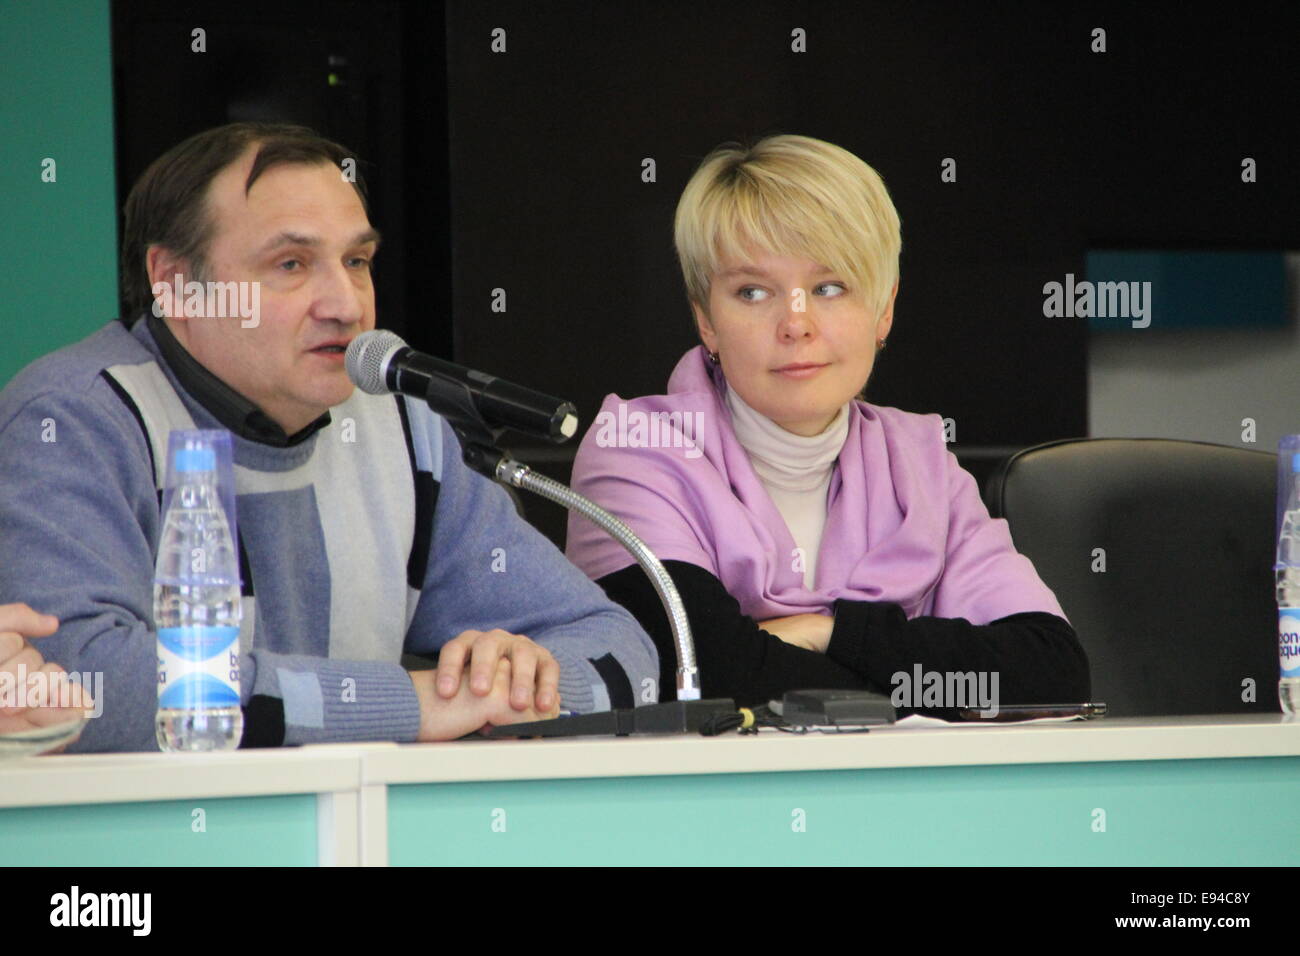 Moskau, Russland - 11. Februar 2012. Expert Andrei Buzin und Richtlinien Evgeniya Chirikova. Konferenz am Set von Beobachtern zur t Stockfoto